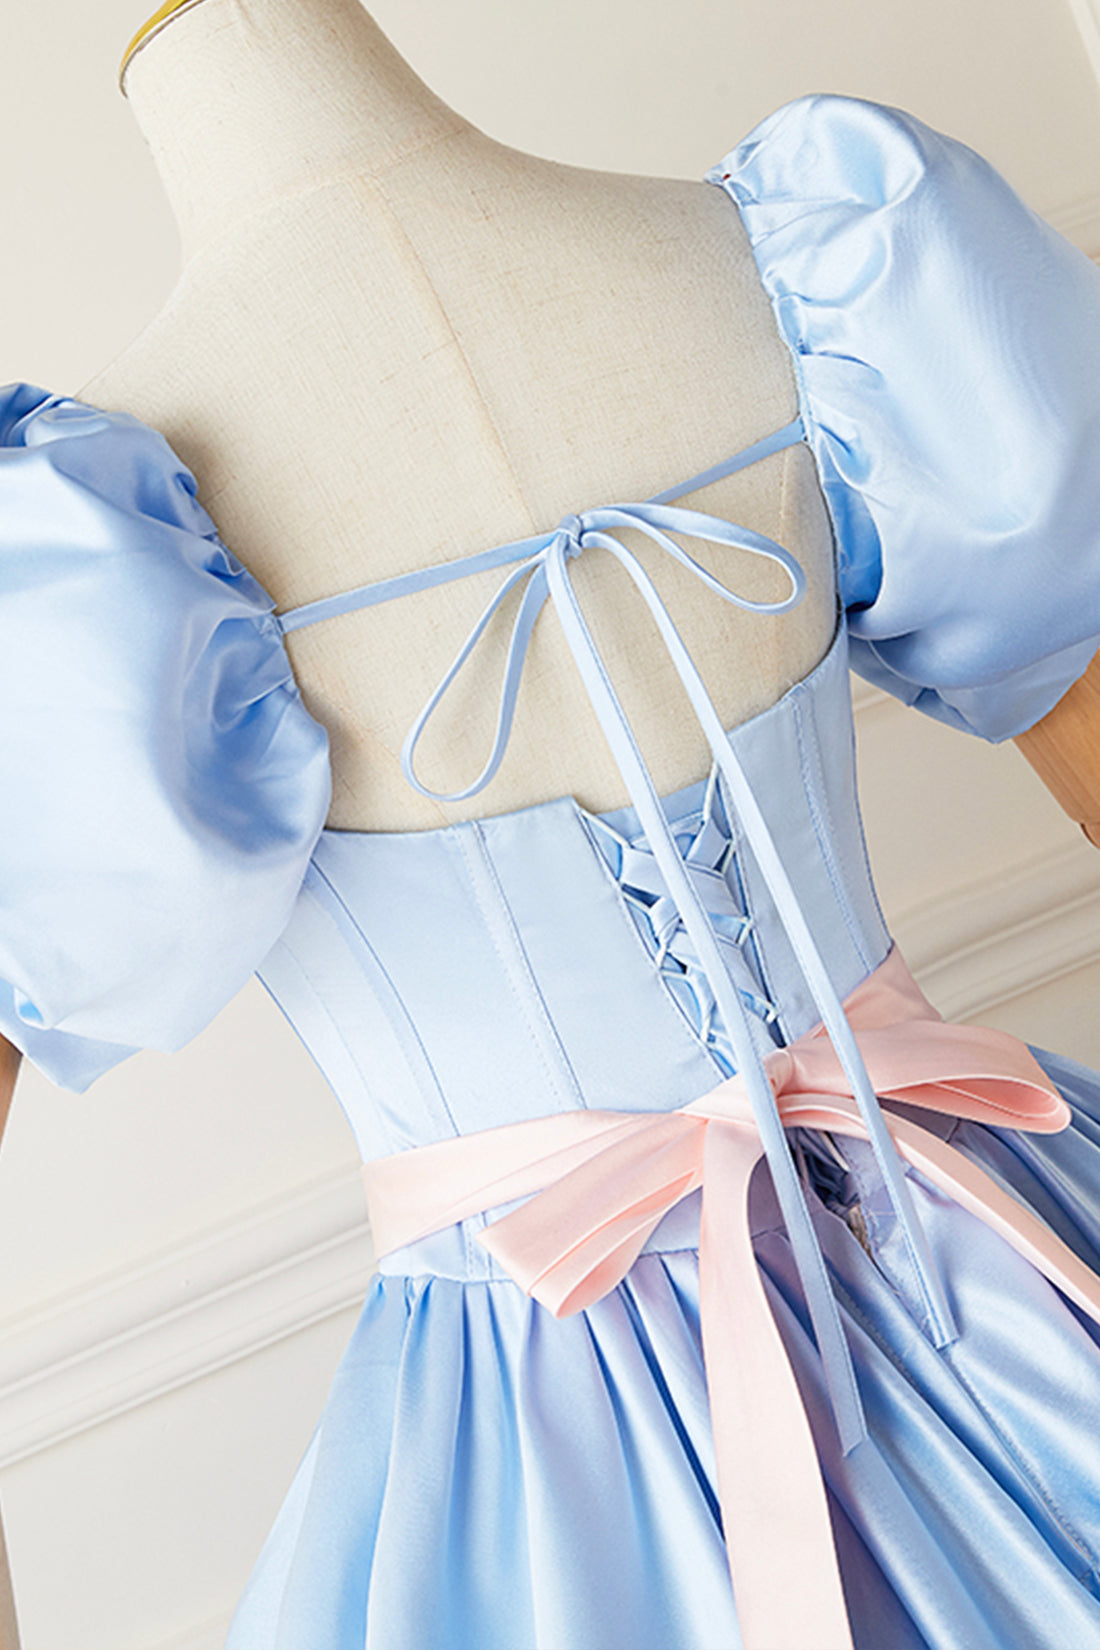 Blue Satin Long Princess Dress, Lovely Short Sleeve Ball Gown Sweet 16 Dress